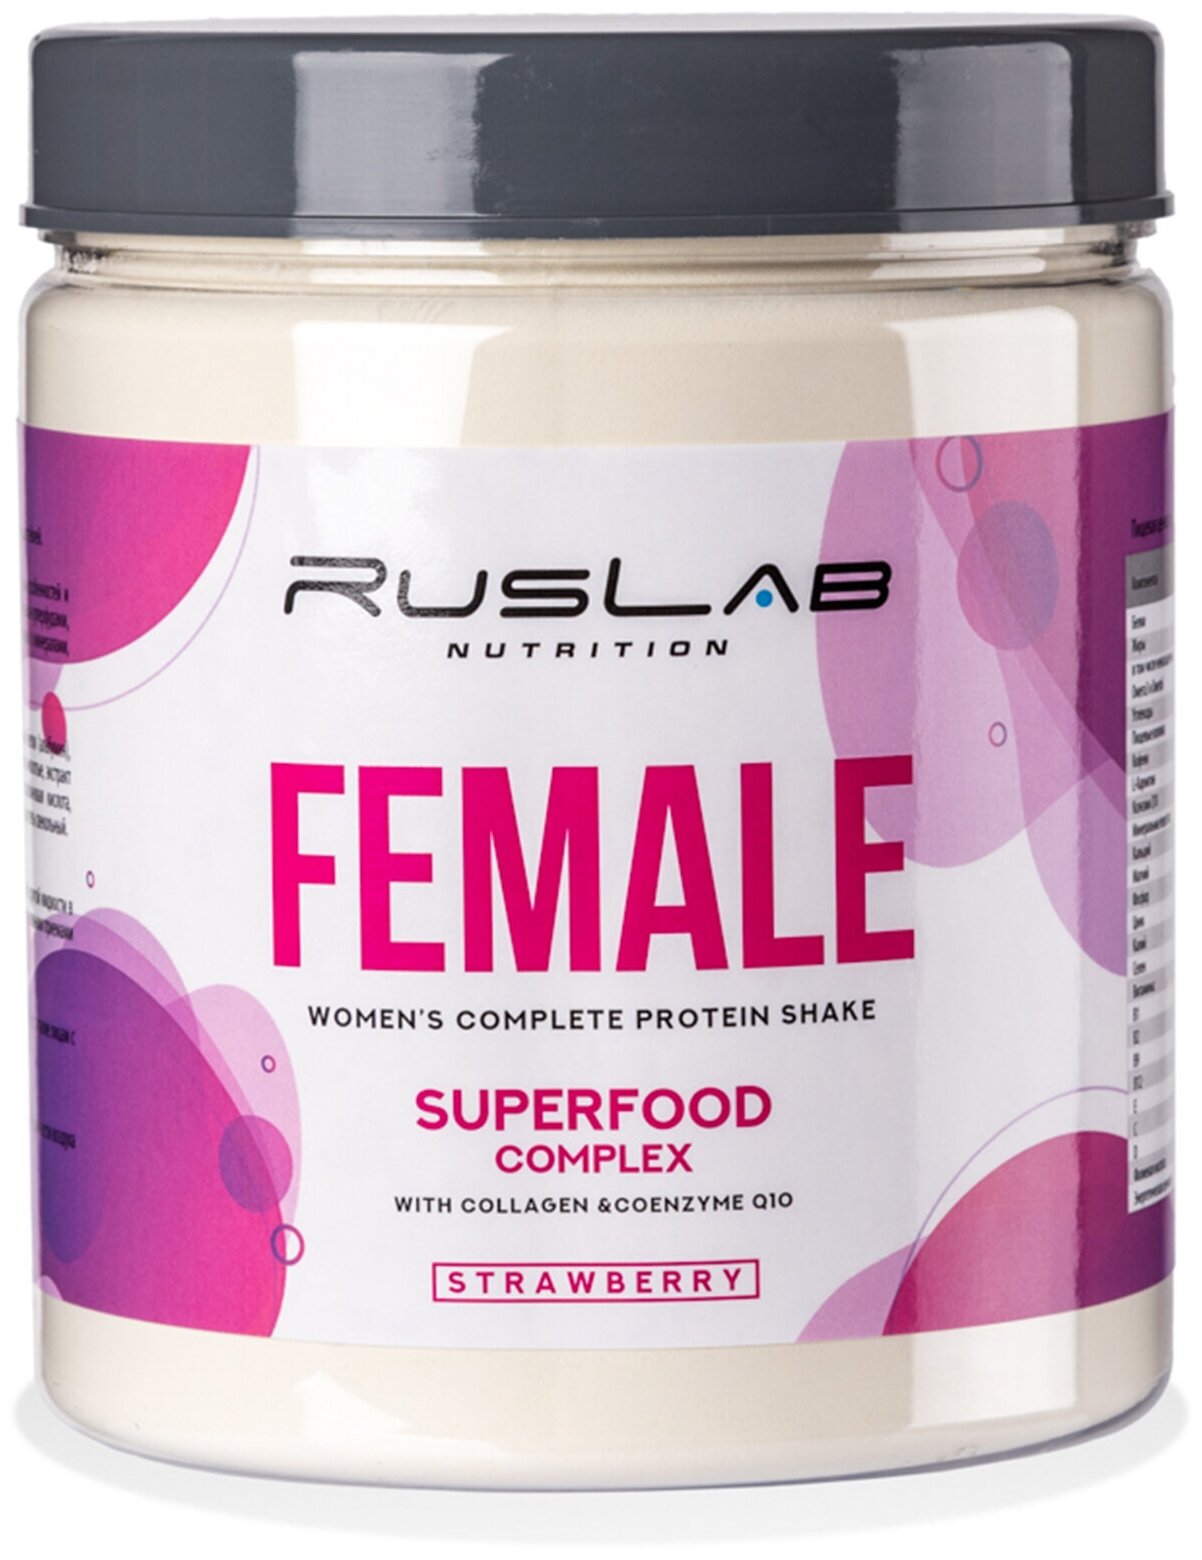 FEMALE-протеин для похудения,белковый коктейль для девушек (700 гр),вкус клубника со сливками